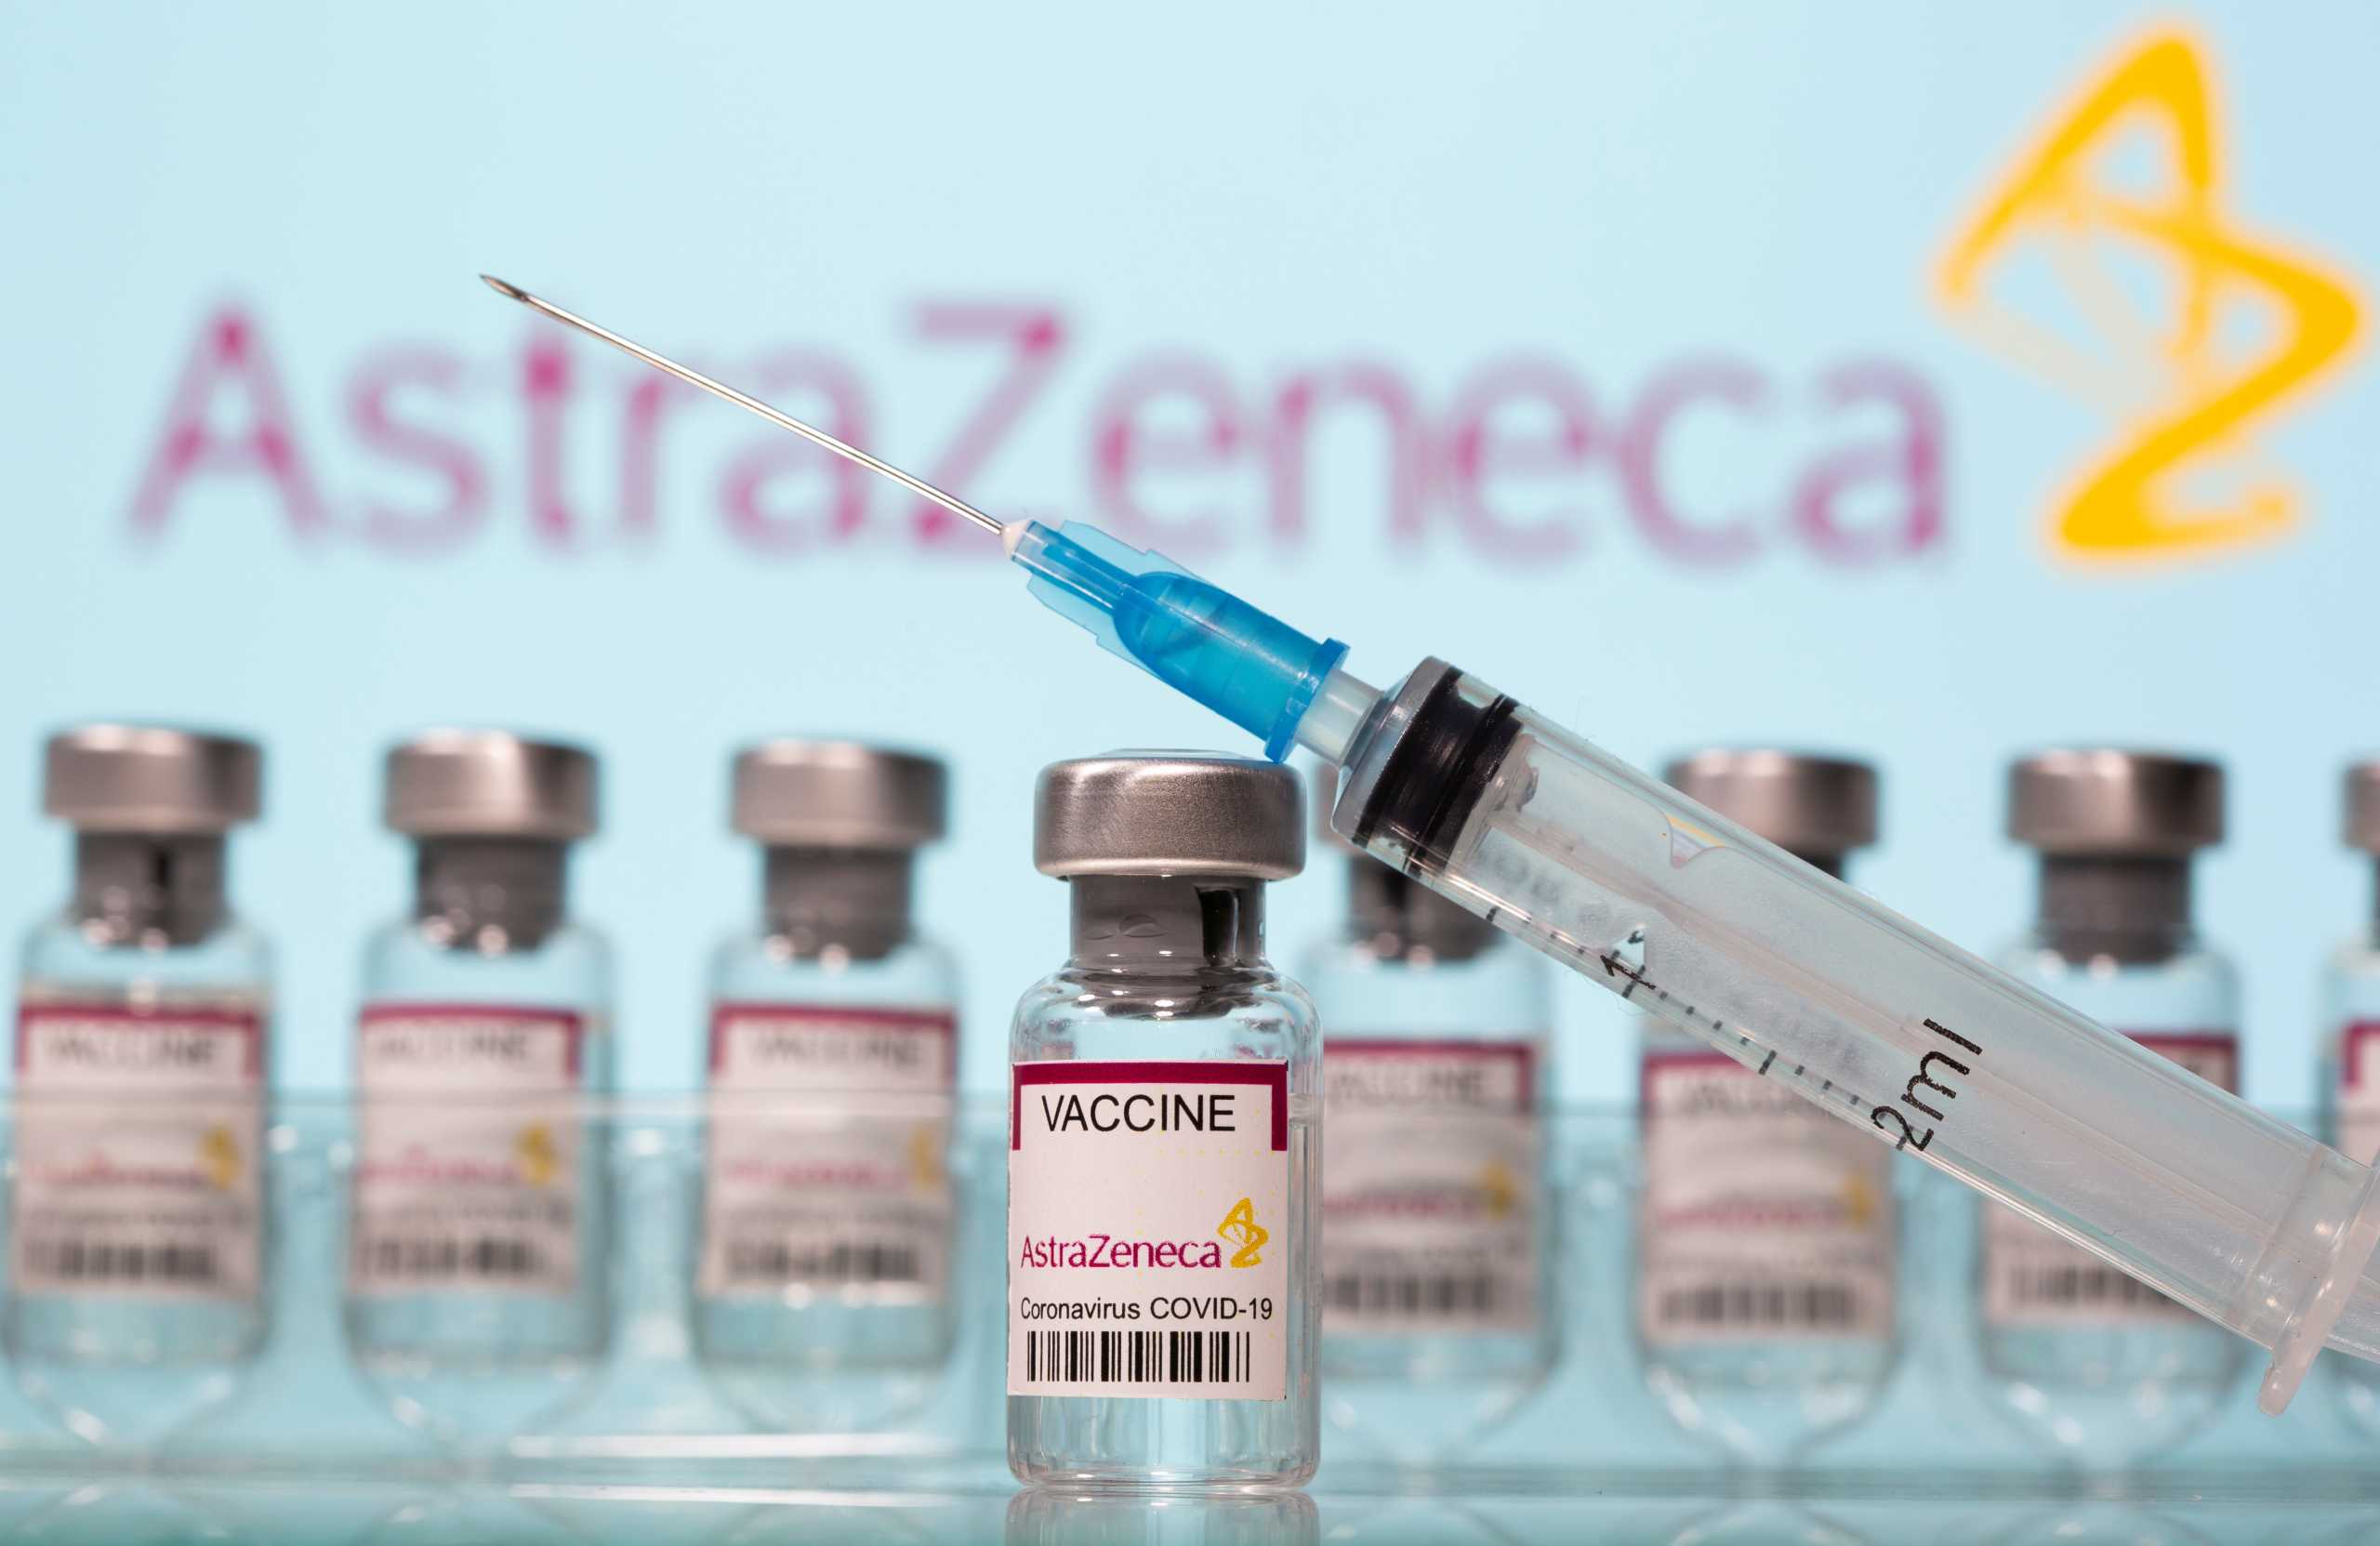 ΠΟΥ: Η Ευρώπη να συνεχίσει το εμβόλιο της AstraZeneca – «Ανησυχητική» αύξηση κρουσμάτων